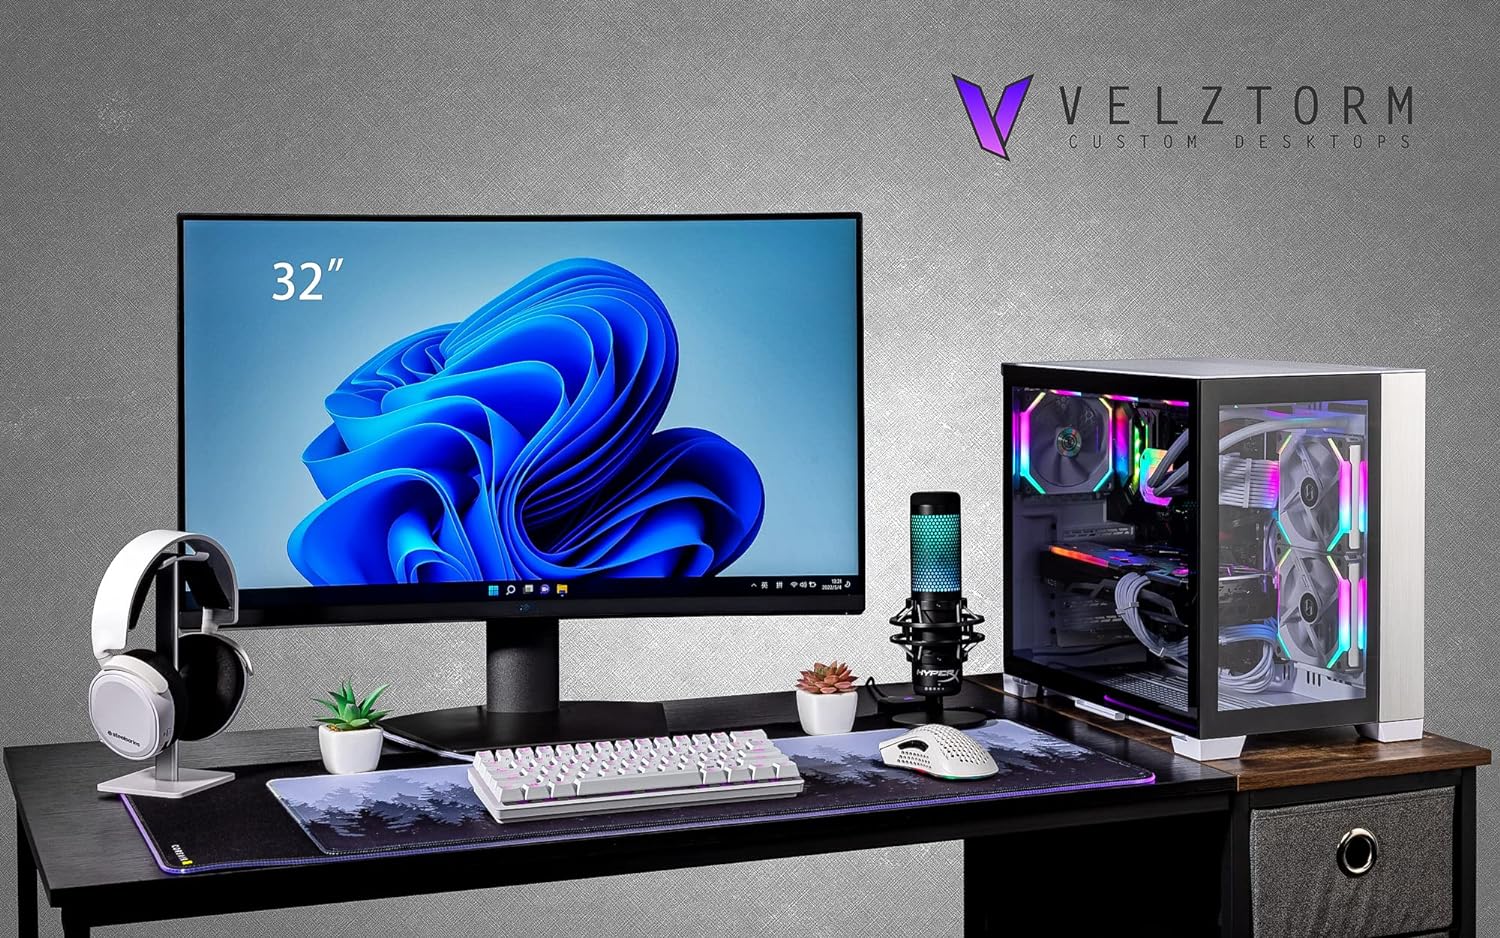 Velztorm Mini Lux Gaming Desktop PC (AMD Ryzen 9 5950X 16-Core, Radeon RX 7900 XT, 32GB RAM, 512GB PCIe SSD + 1TB HDD (3.5), WiFi, USB 3.2, HDMI, Display Port, Win 10 Pro)